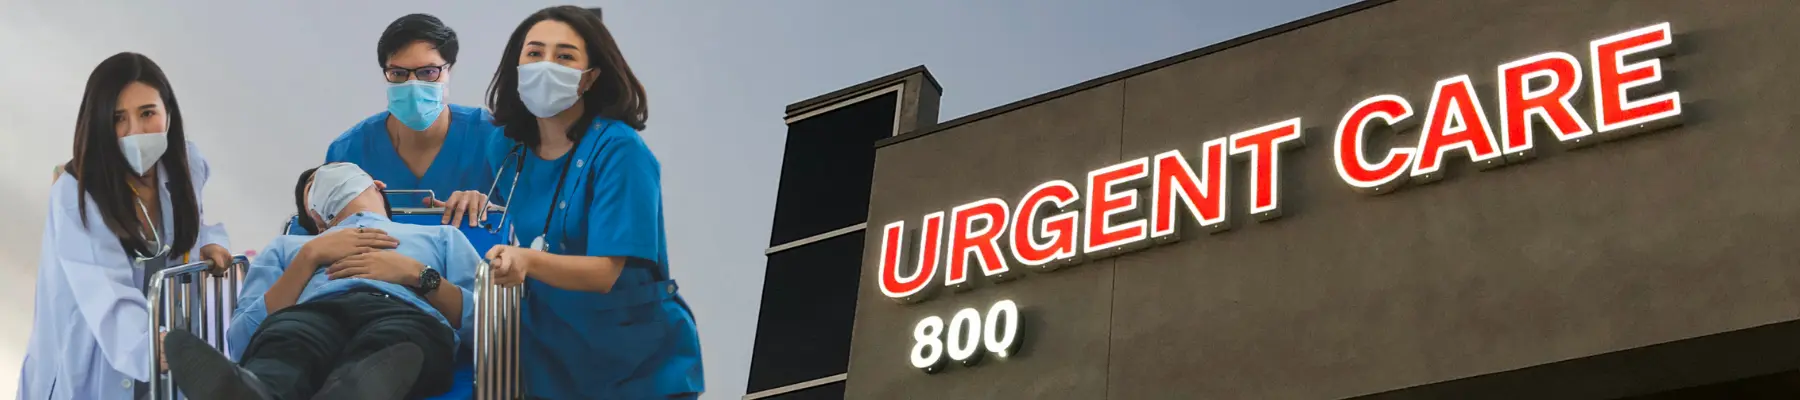 Top Urgent Care Marketing Agencies